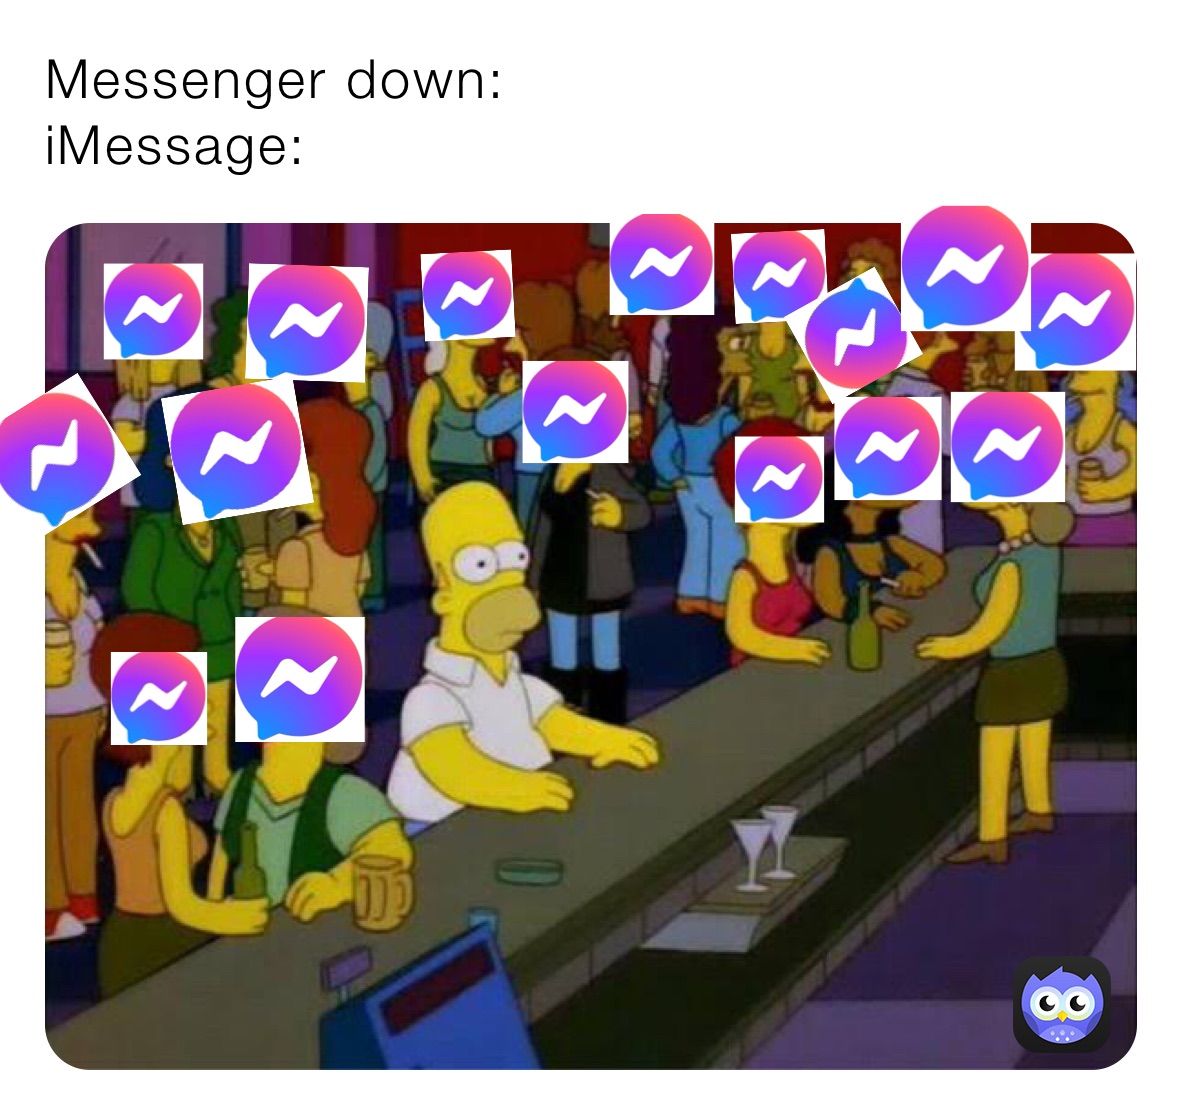 Messenger down: 
iMessage: 